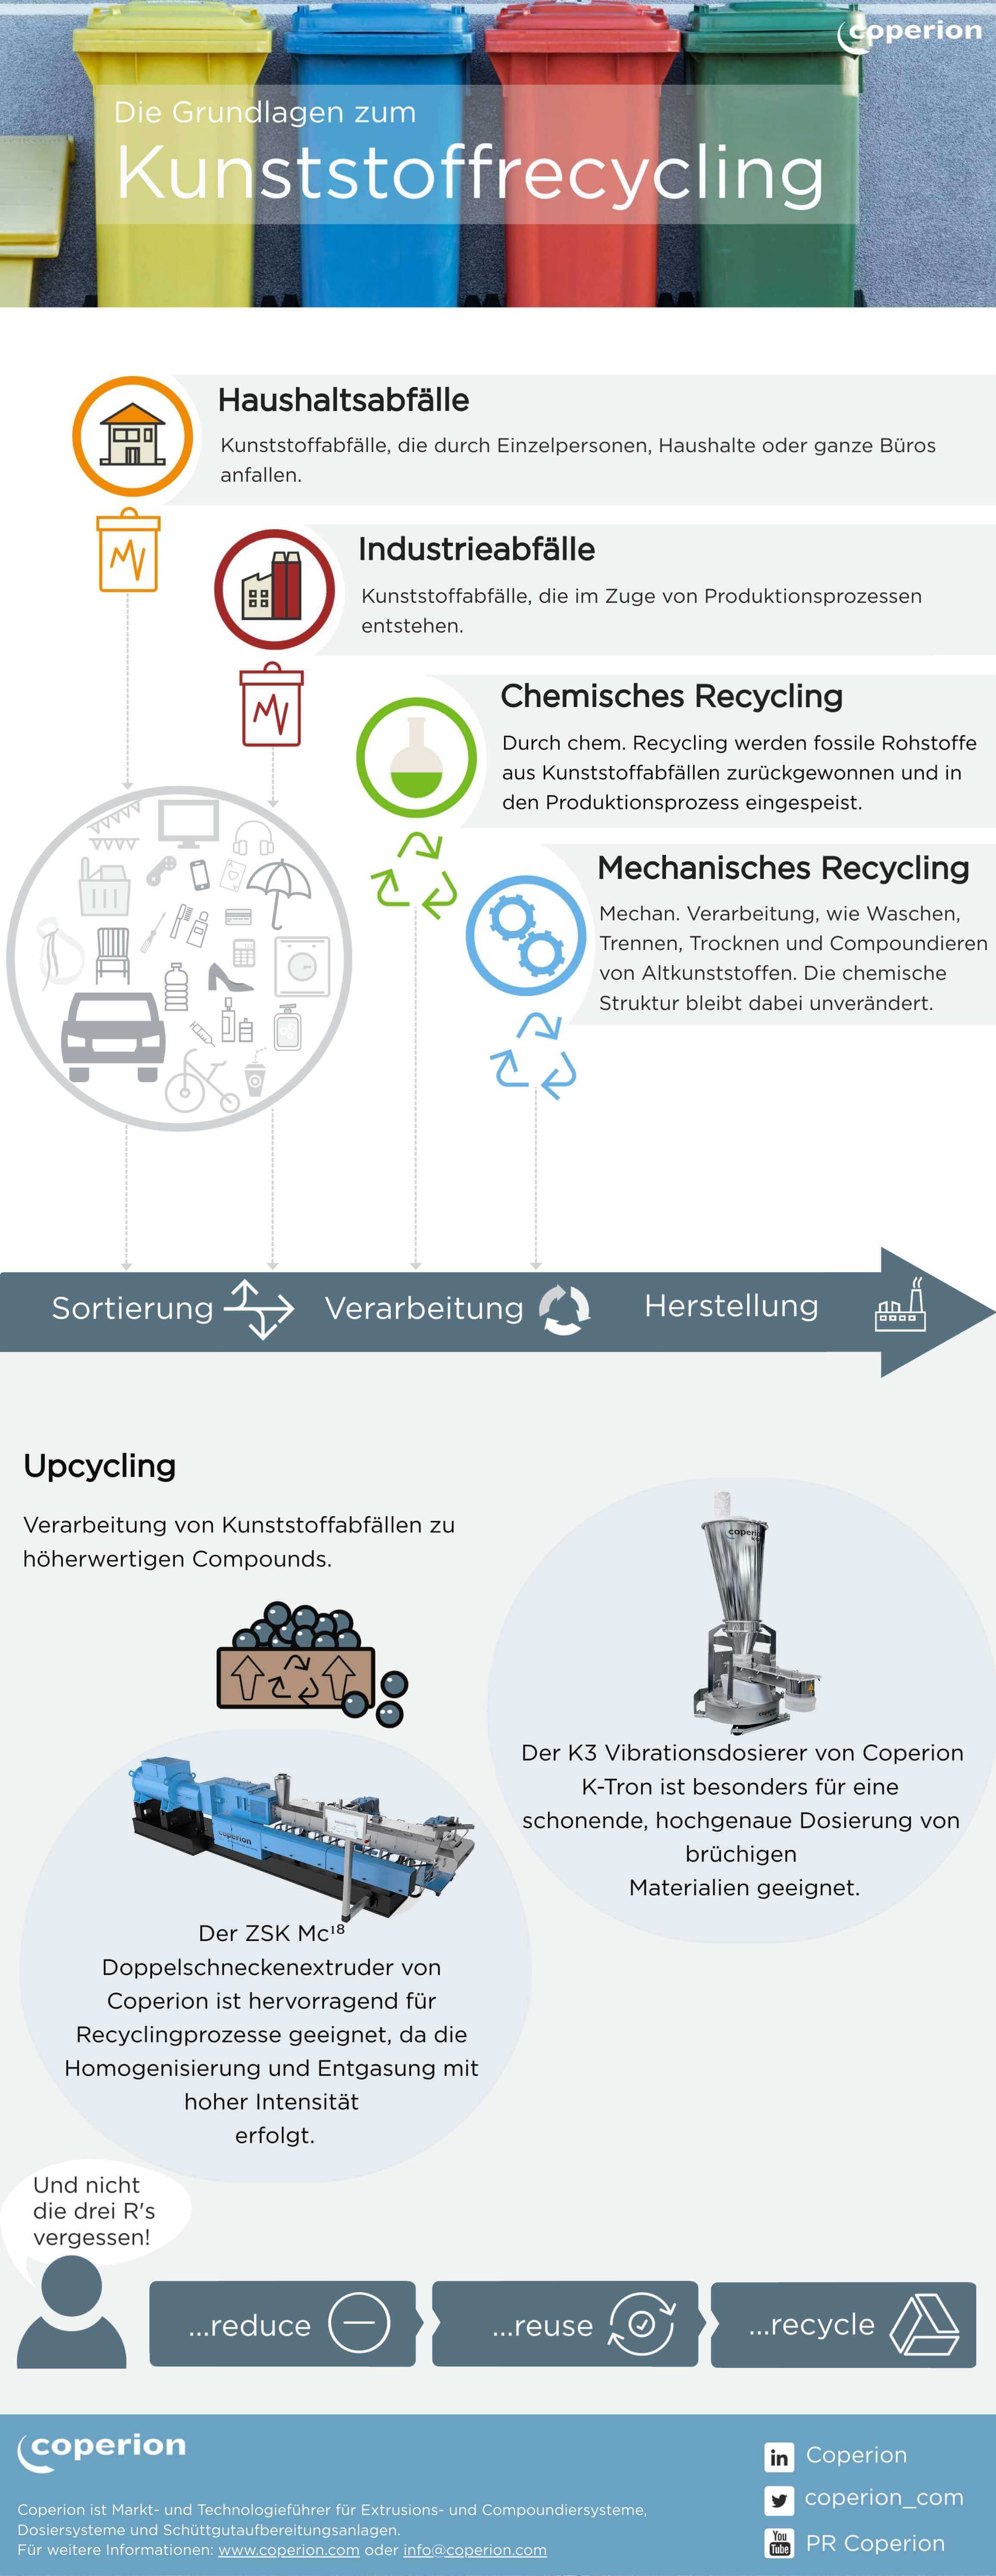 Coperion Grundlagen zum Kunststoffrecycling Infographic